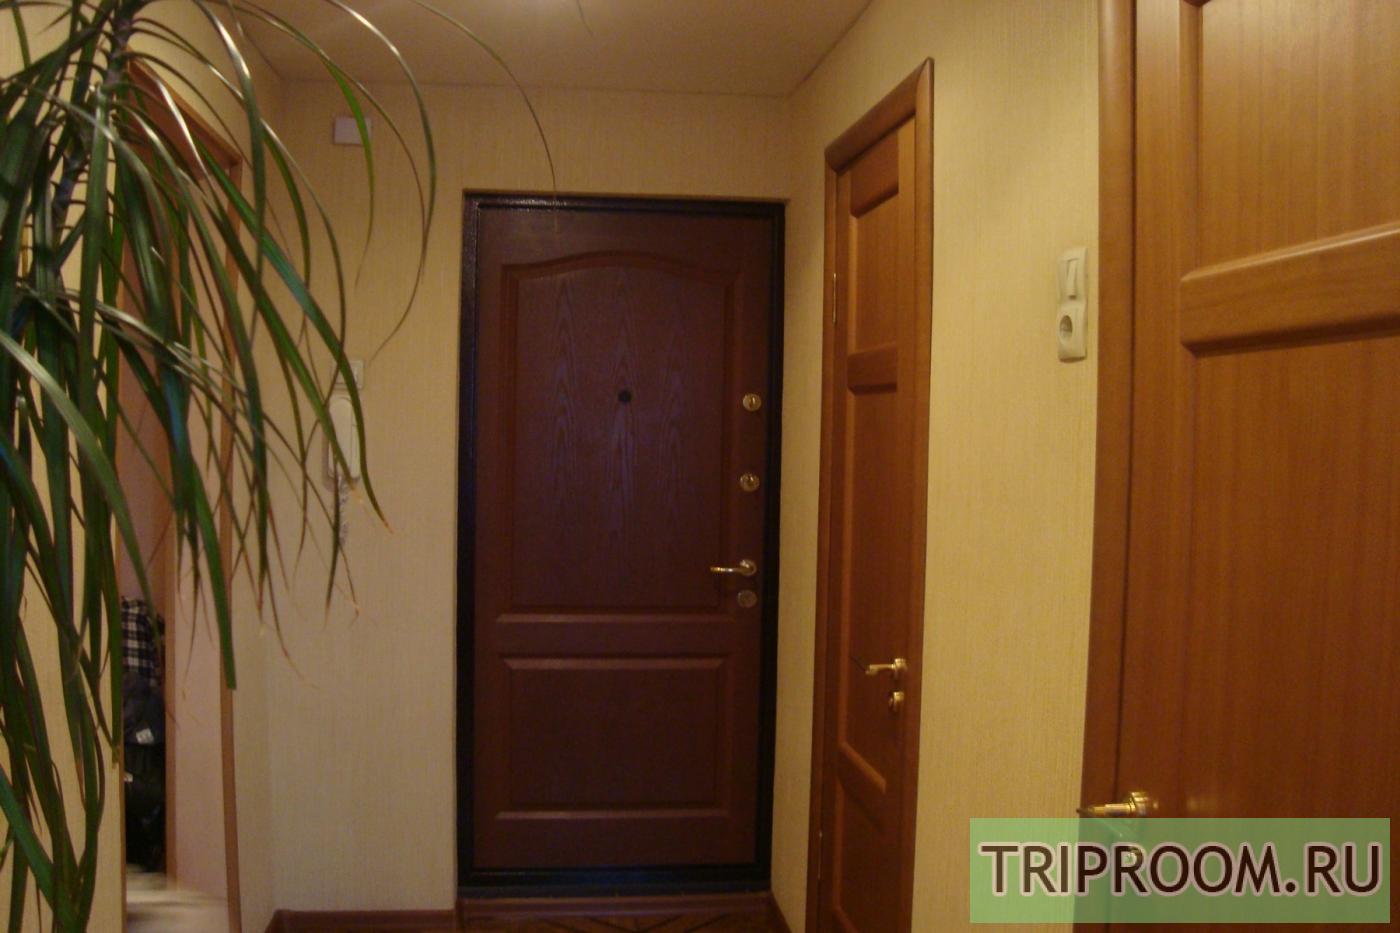 1-комнатная квартира посуточно (вариант № 32975), ул. Ново-Садовая улица, фото № 3